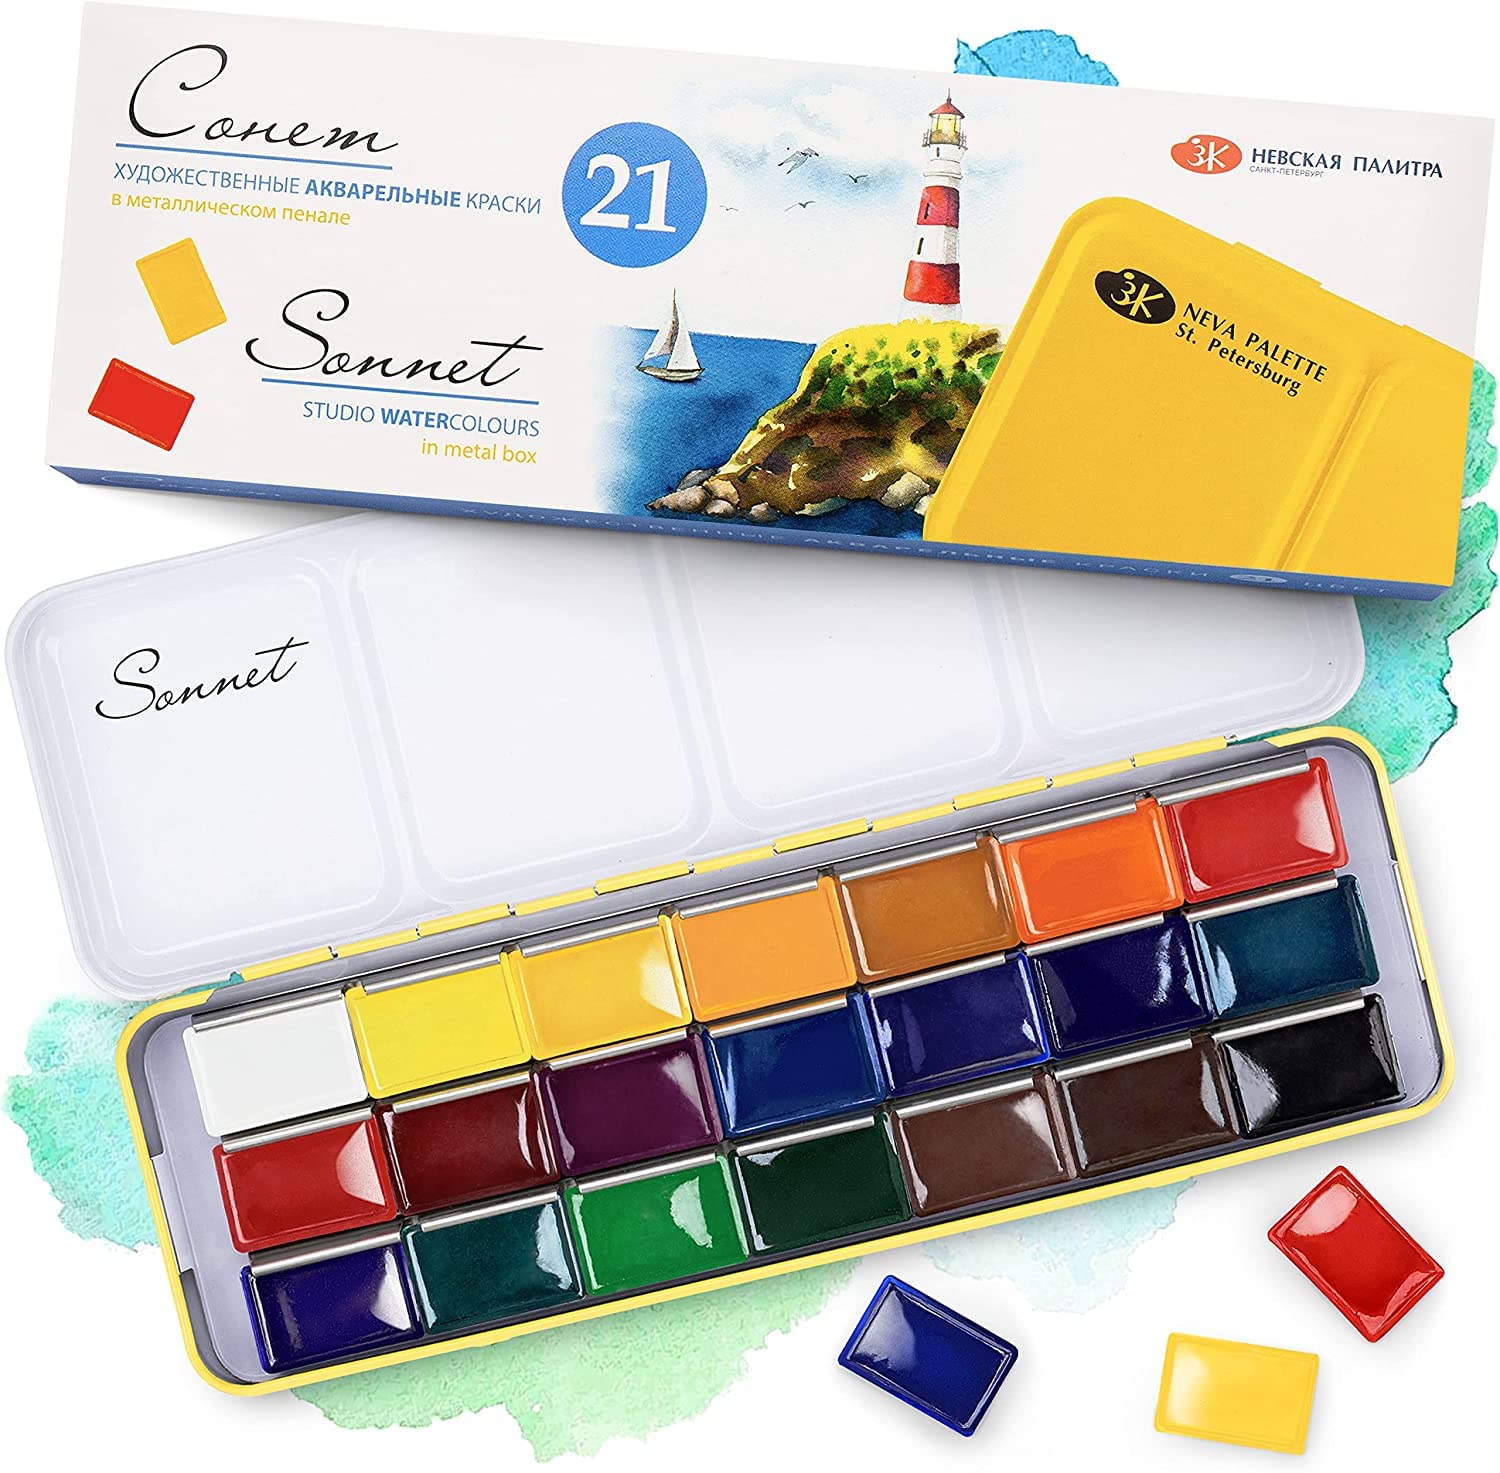 Sonnet Wasserfarben-Set | 21 Aquarellfarben im Mehrzweck-Metallkasten | Made by Nevskaya Palitra